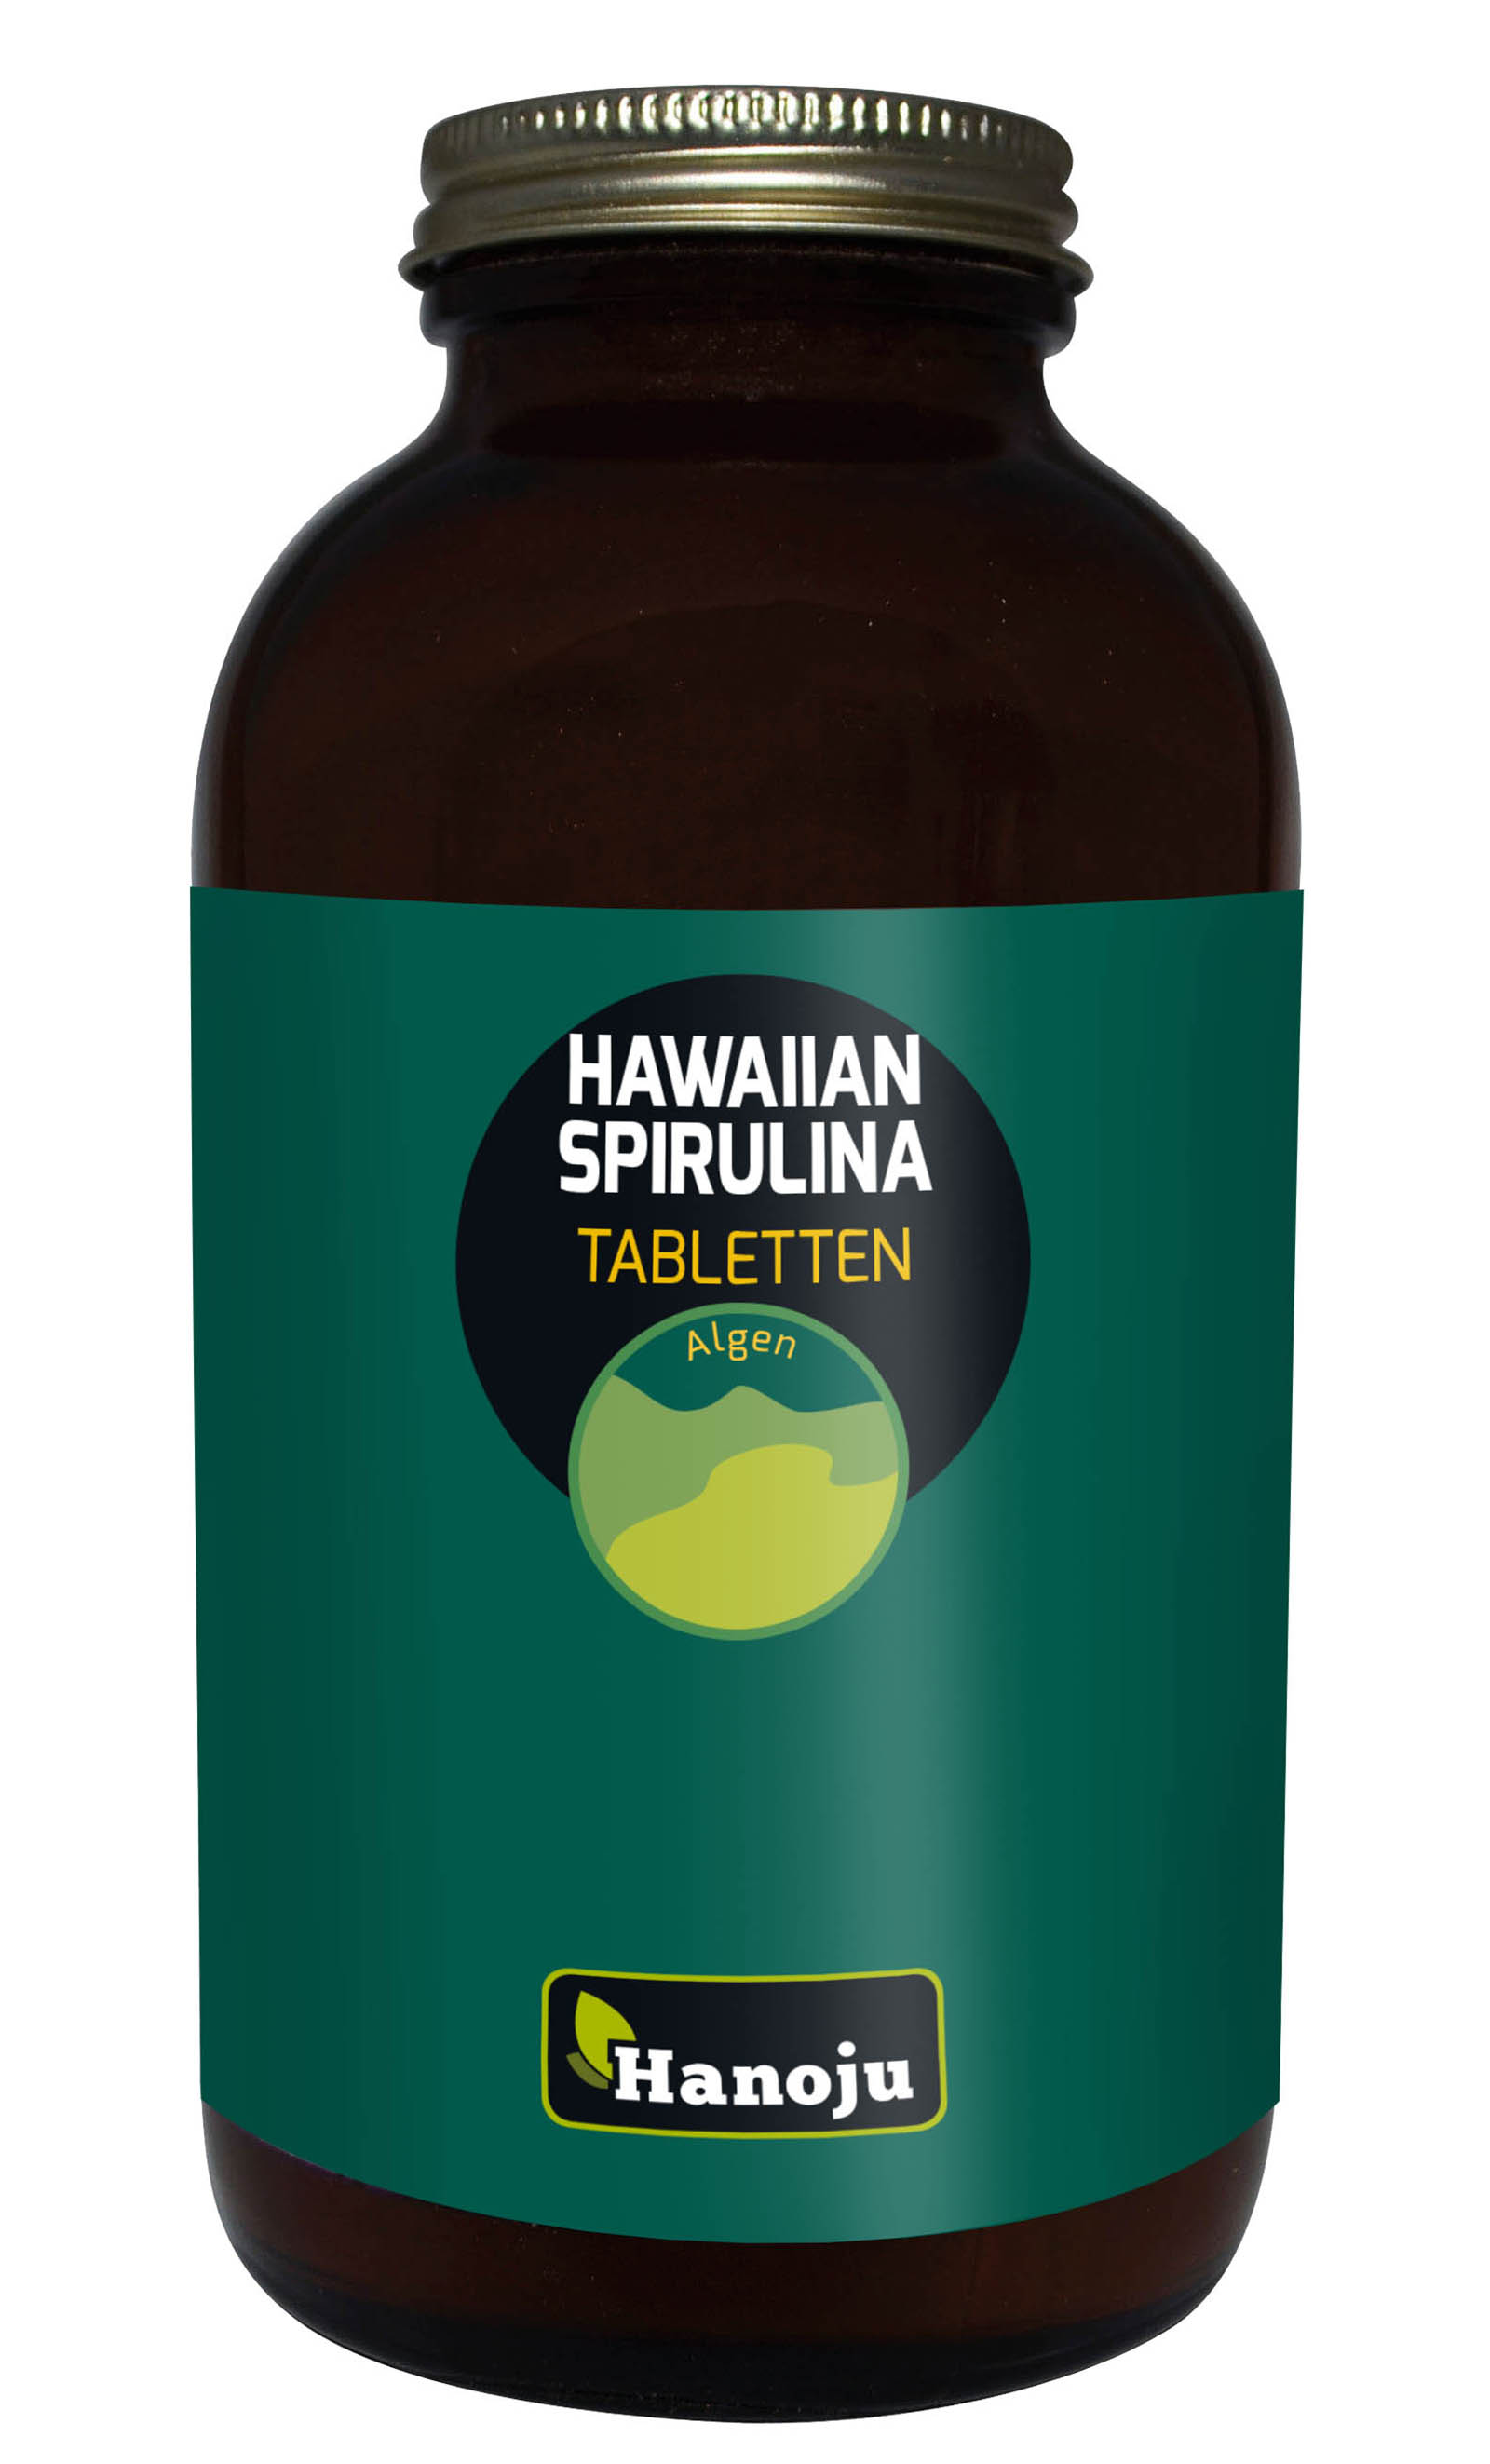 Hanoju Hawaiian Spirulina Tabletten 500mg